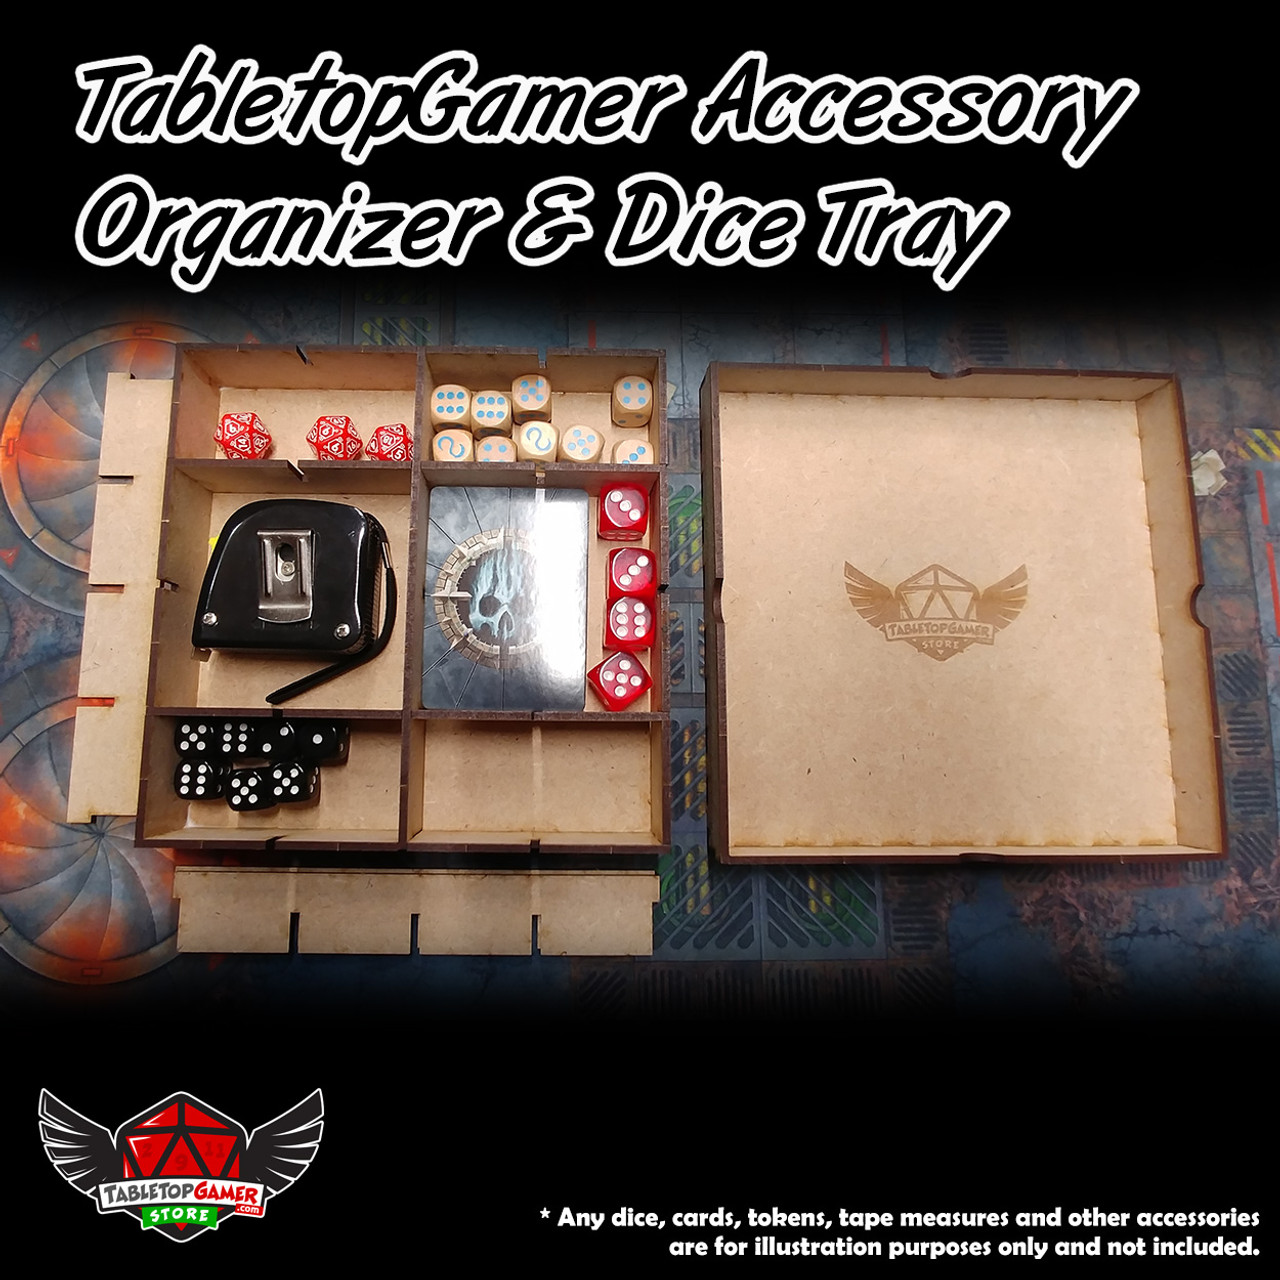 TabletopGamer Accessory Organizer & Dice Tray